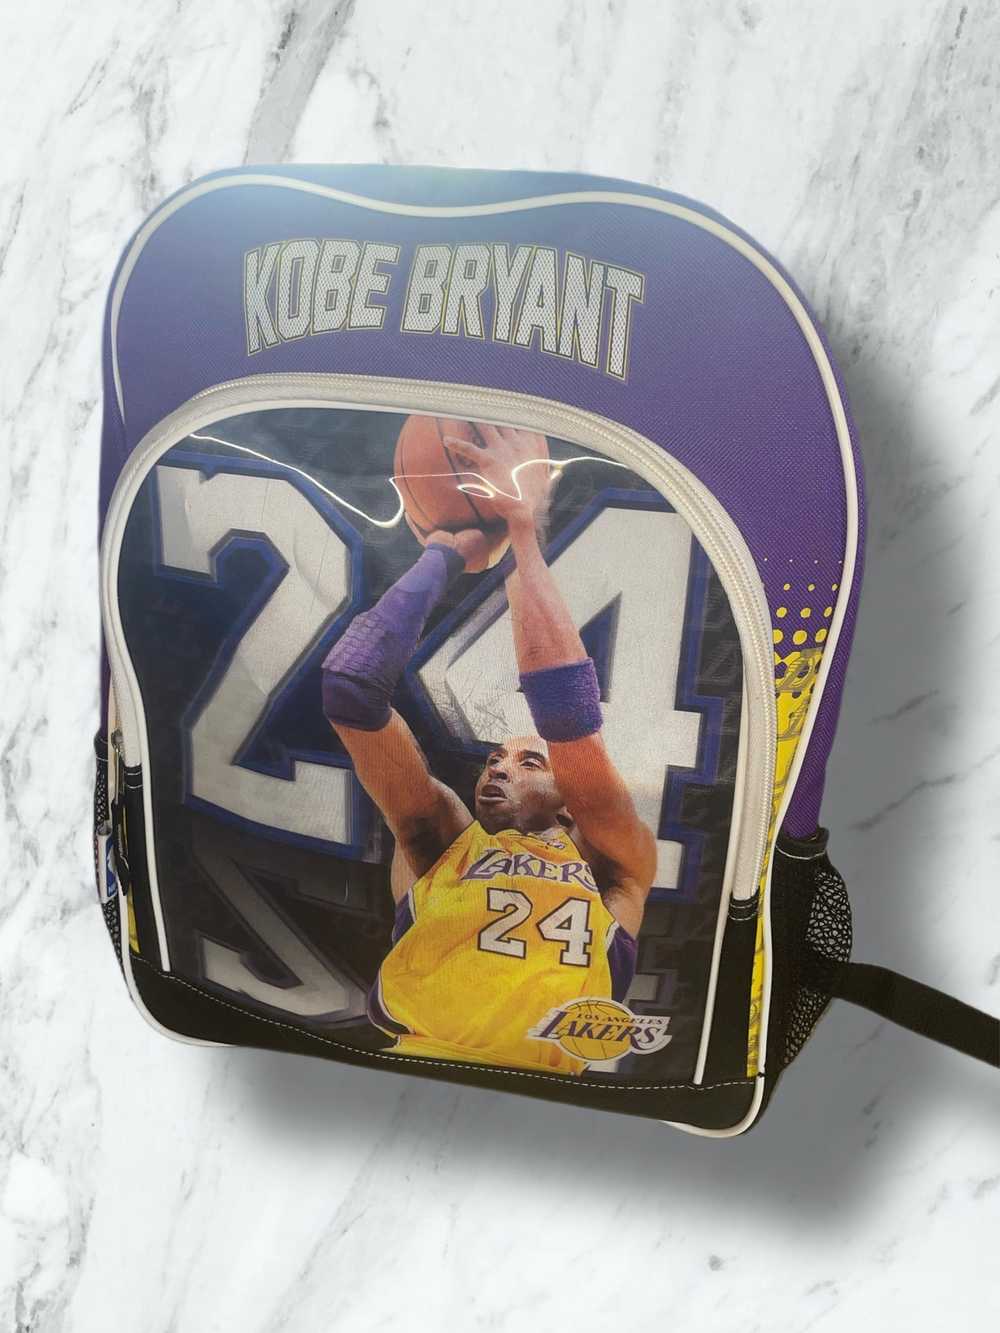 XXXL Amazing 🔥 Kobe Bryant Jersey TRUE 3XL! Purple classic Kobe Lakers